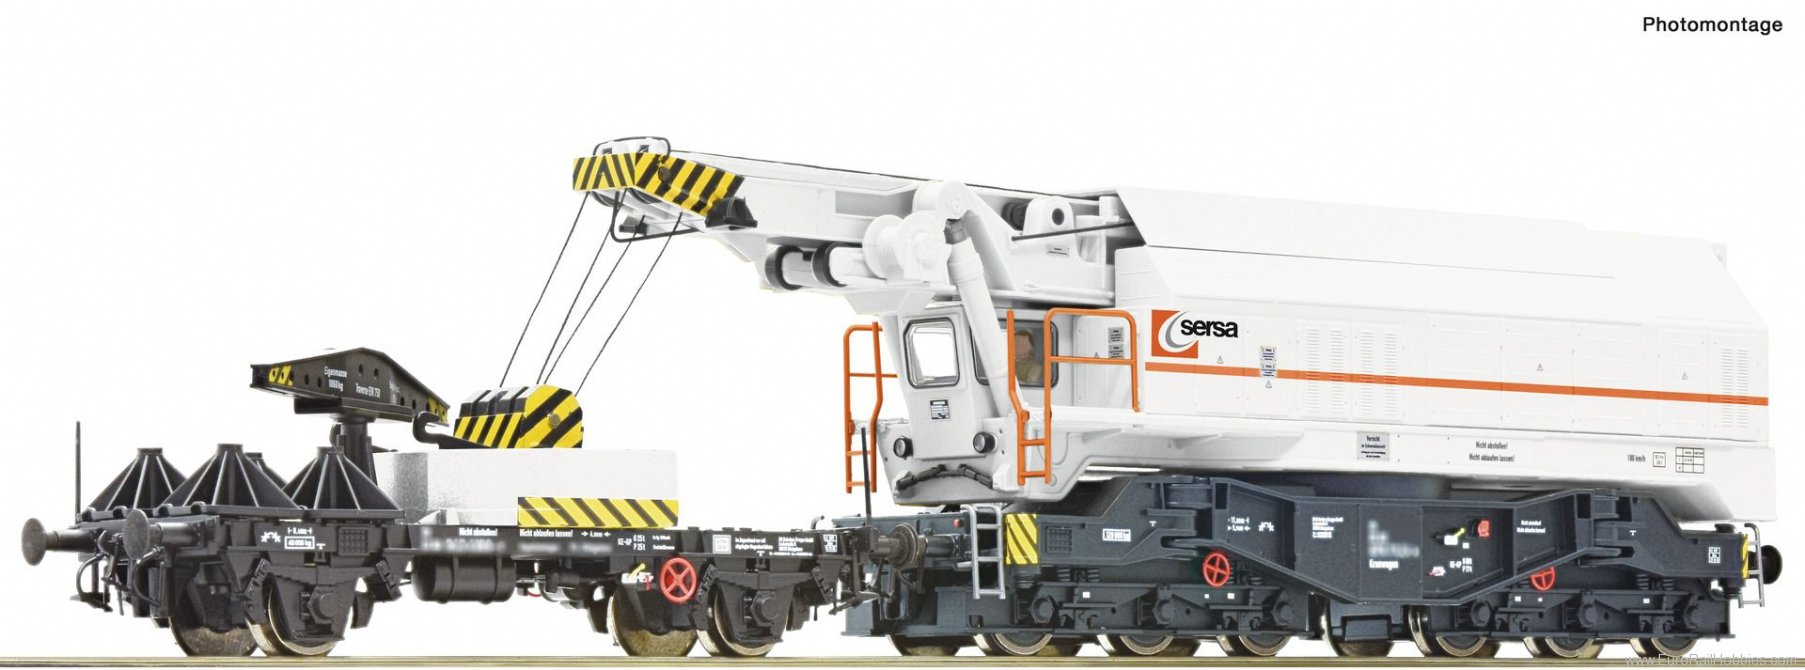 Roco 79039 SERSA Digital Railway Slewing Crane,  (Markli